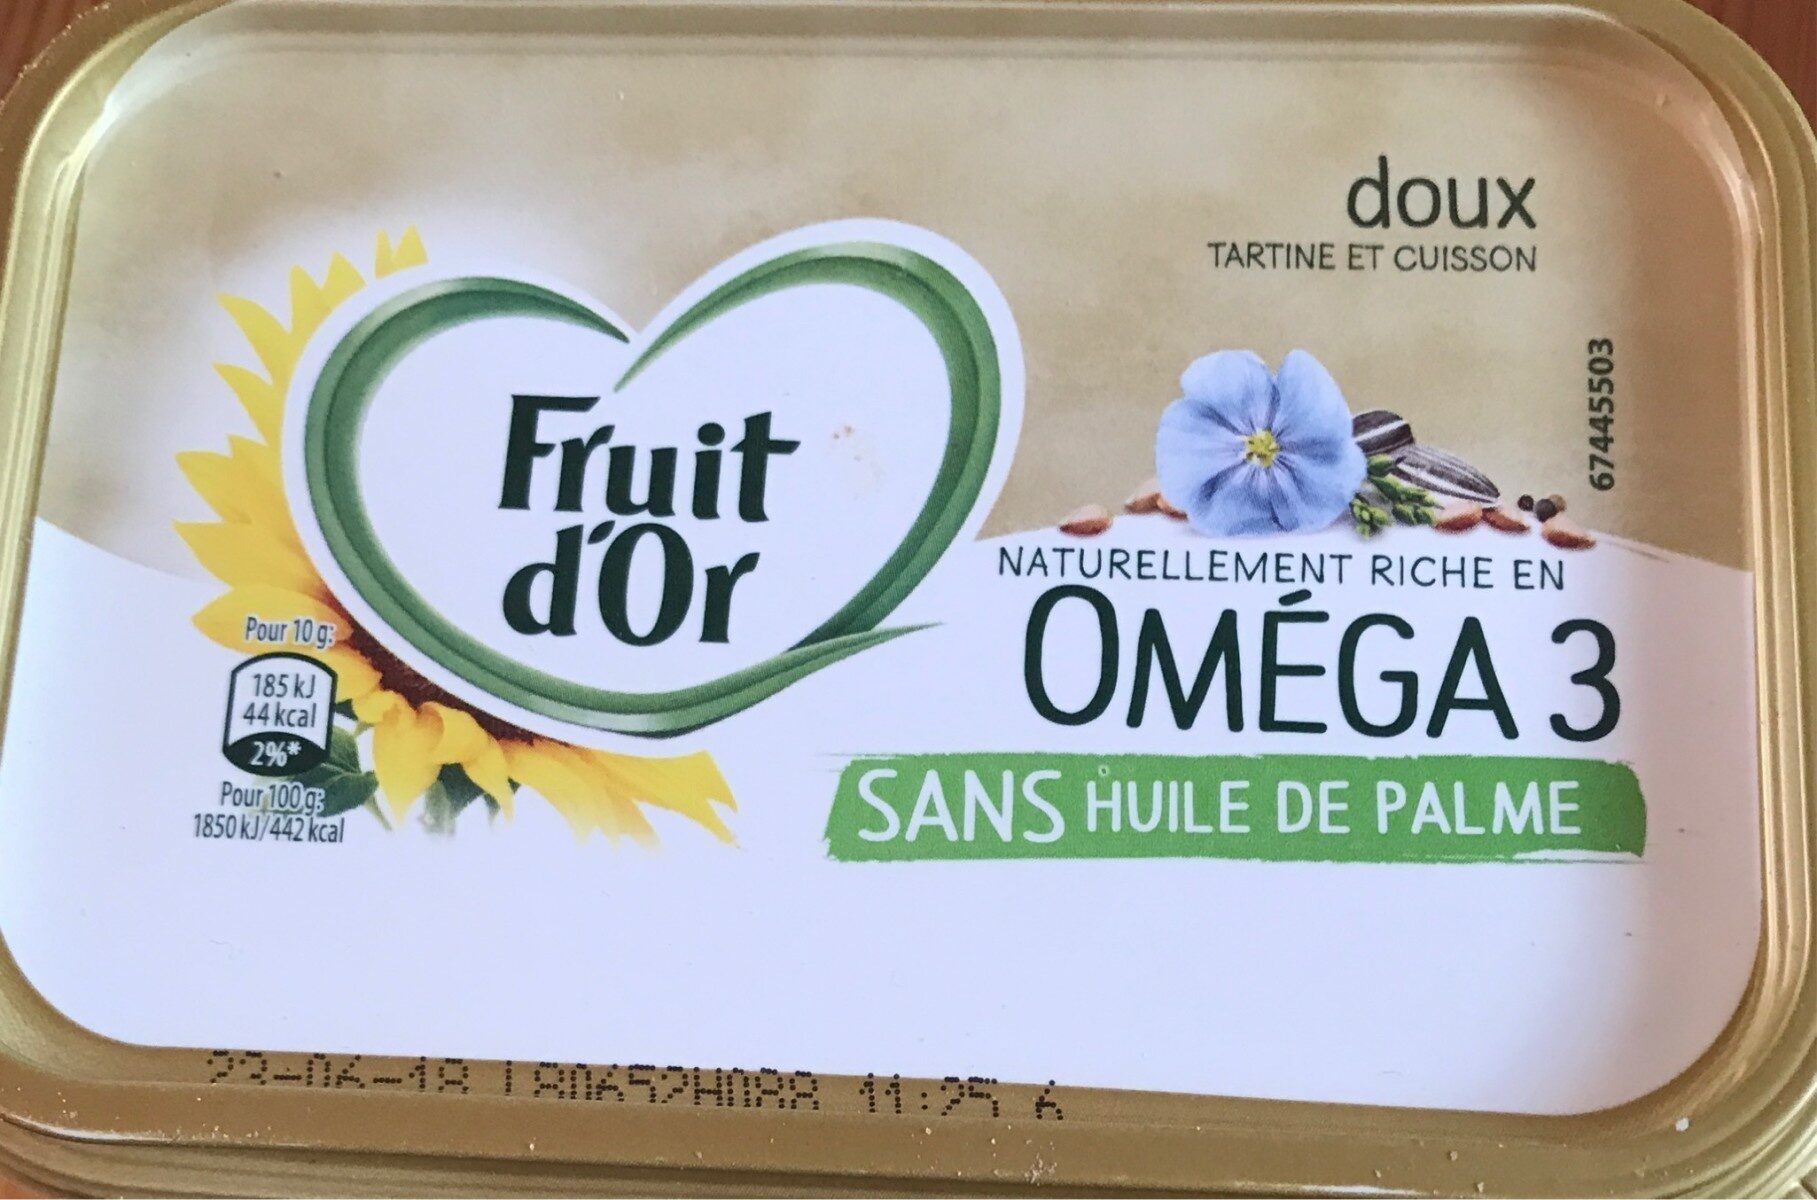 Omega 3 sans huile de palme - Producto - fr